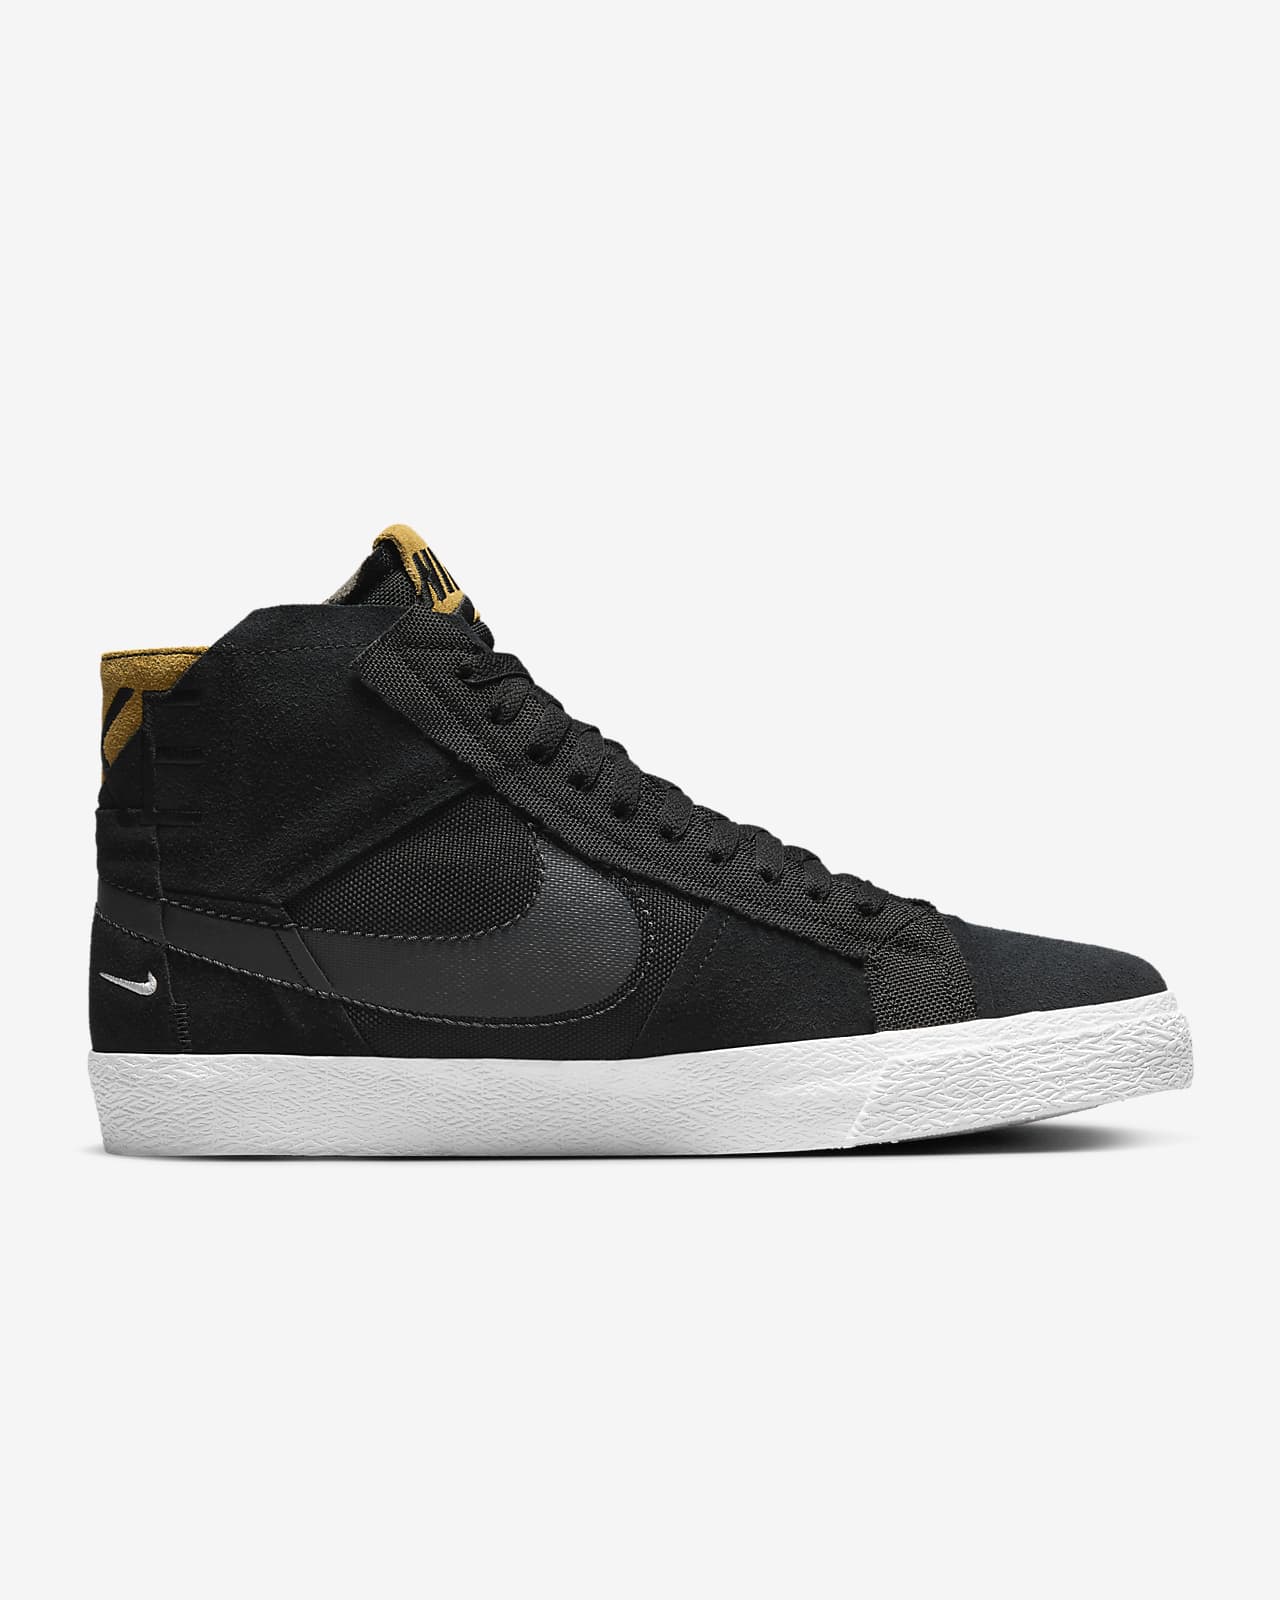 SB Zoom Blazer Mid Skate Shoes. Nike.com